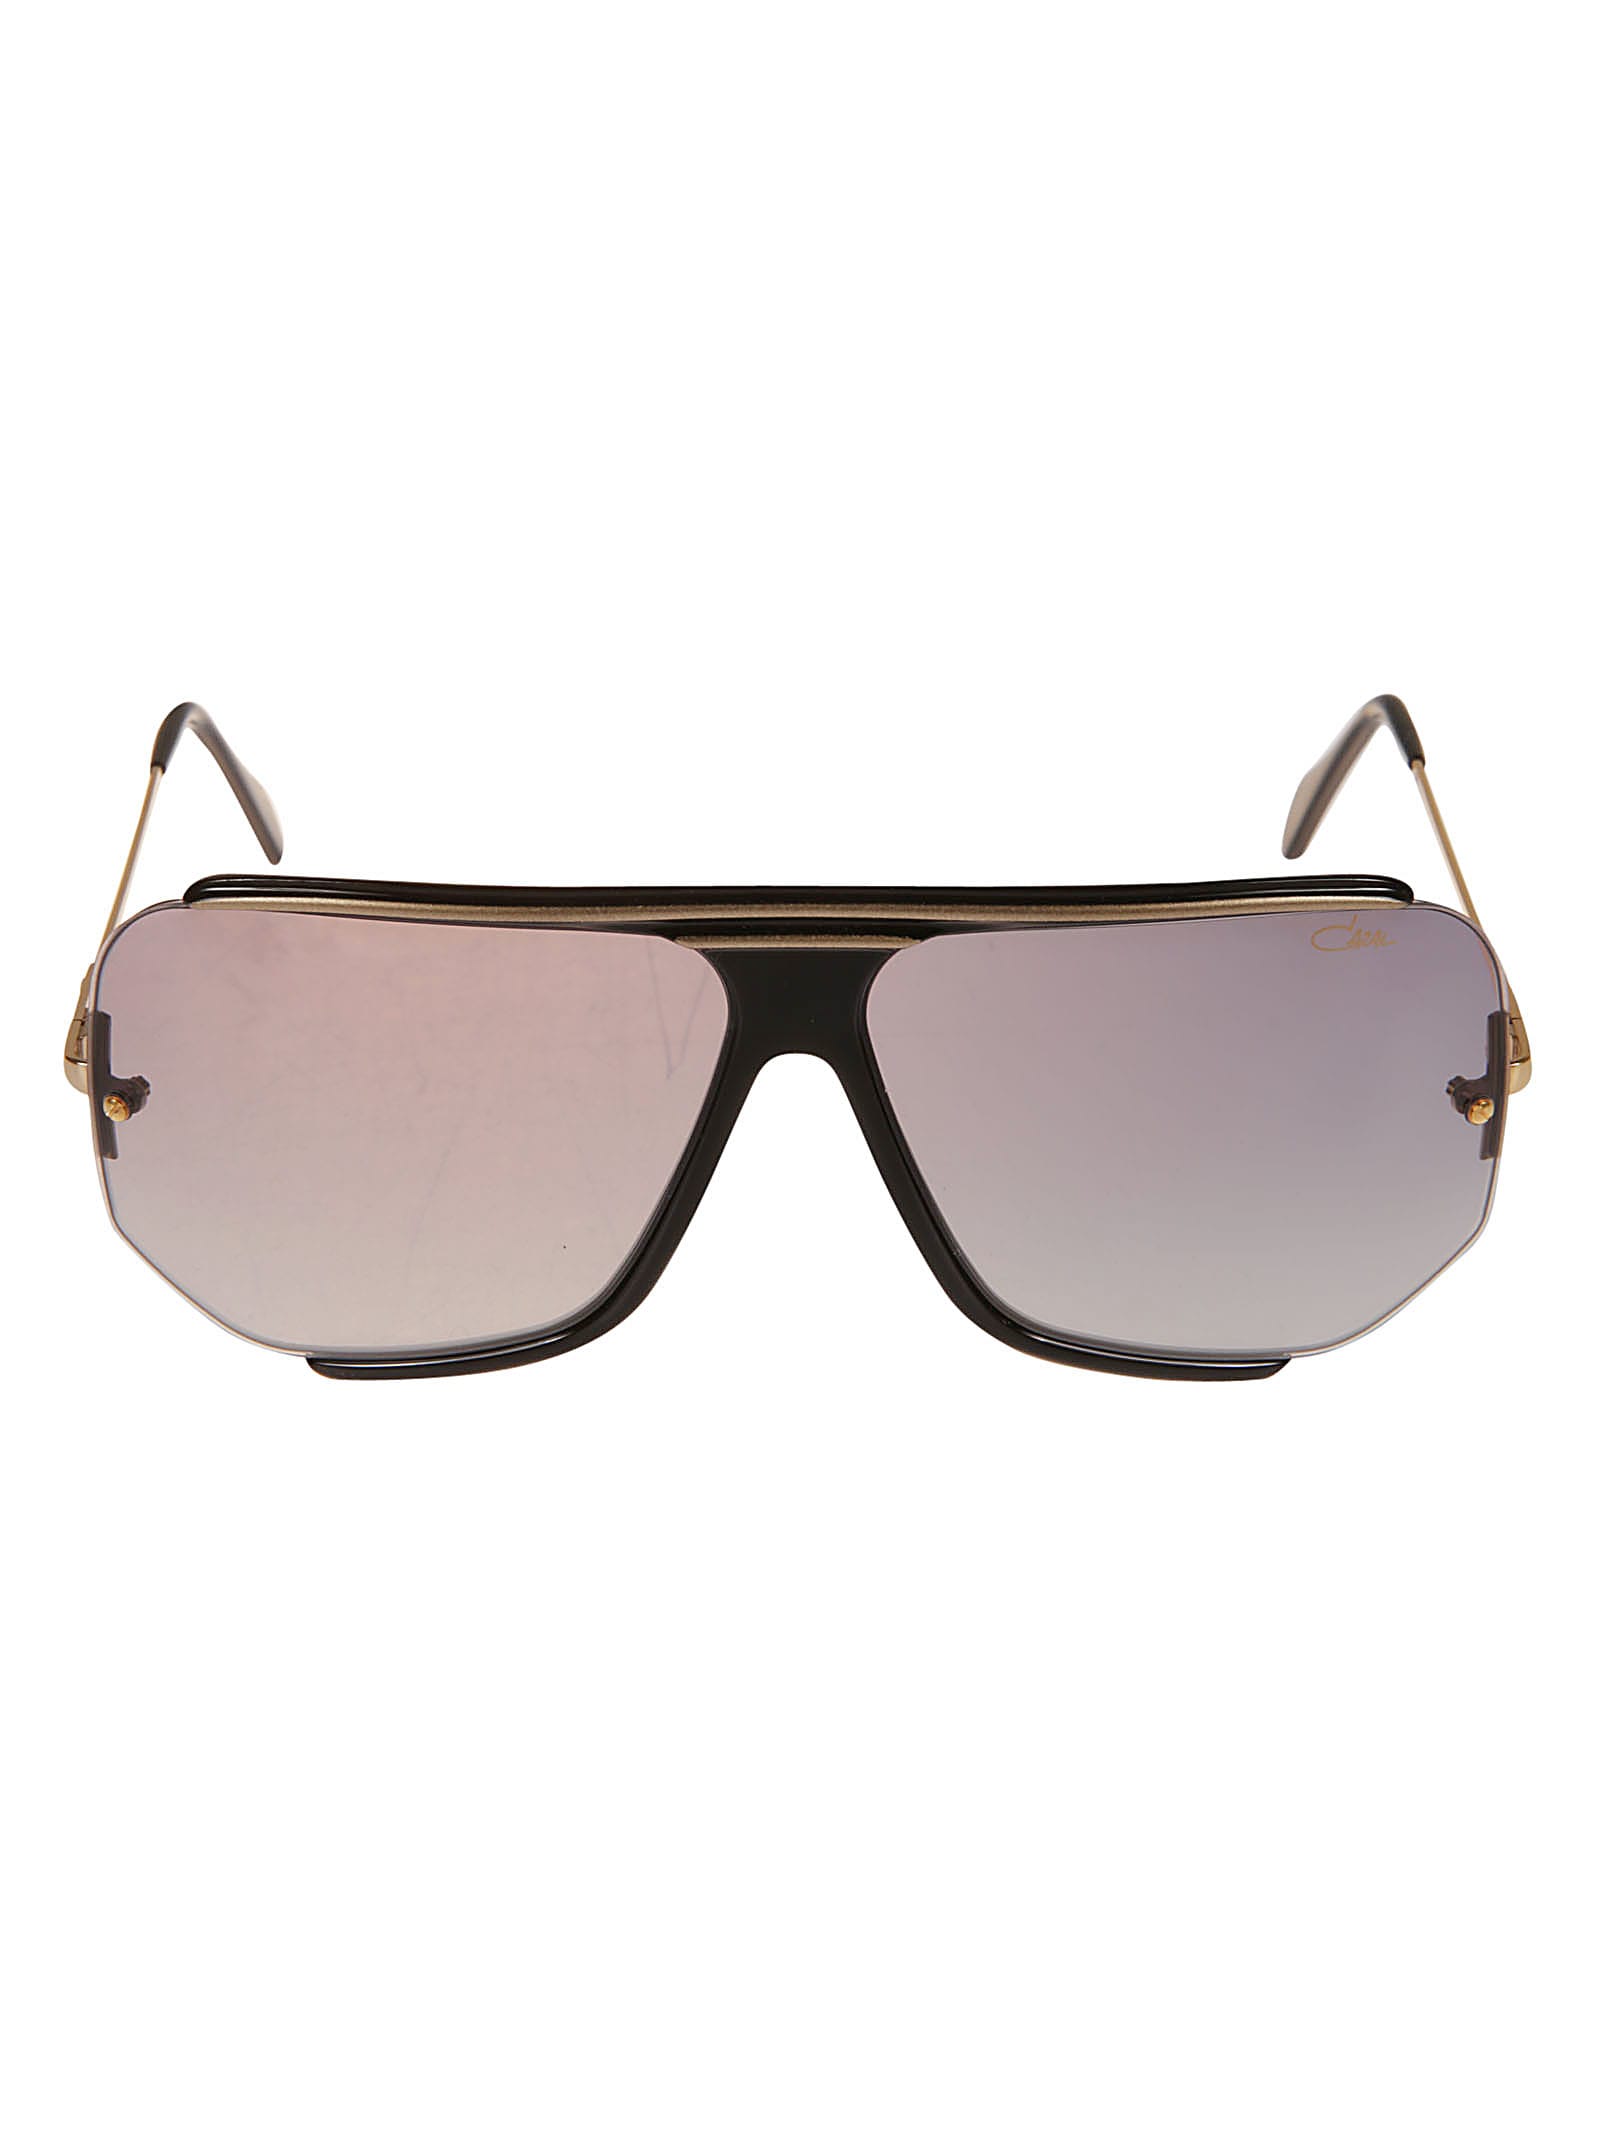 Cazal Flat Top Bar Sunglasses